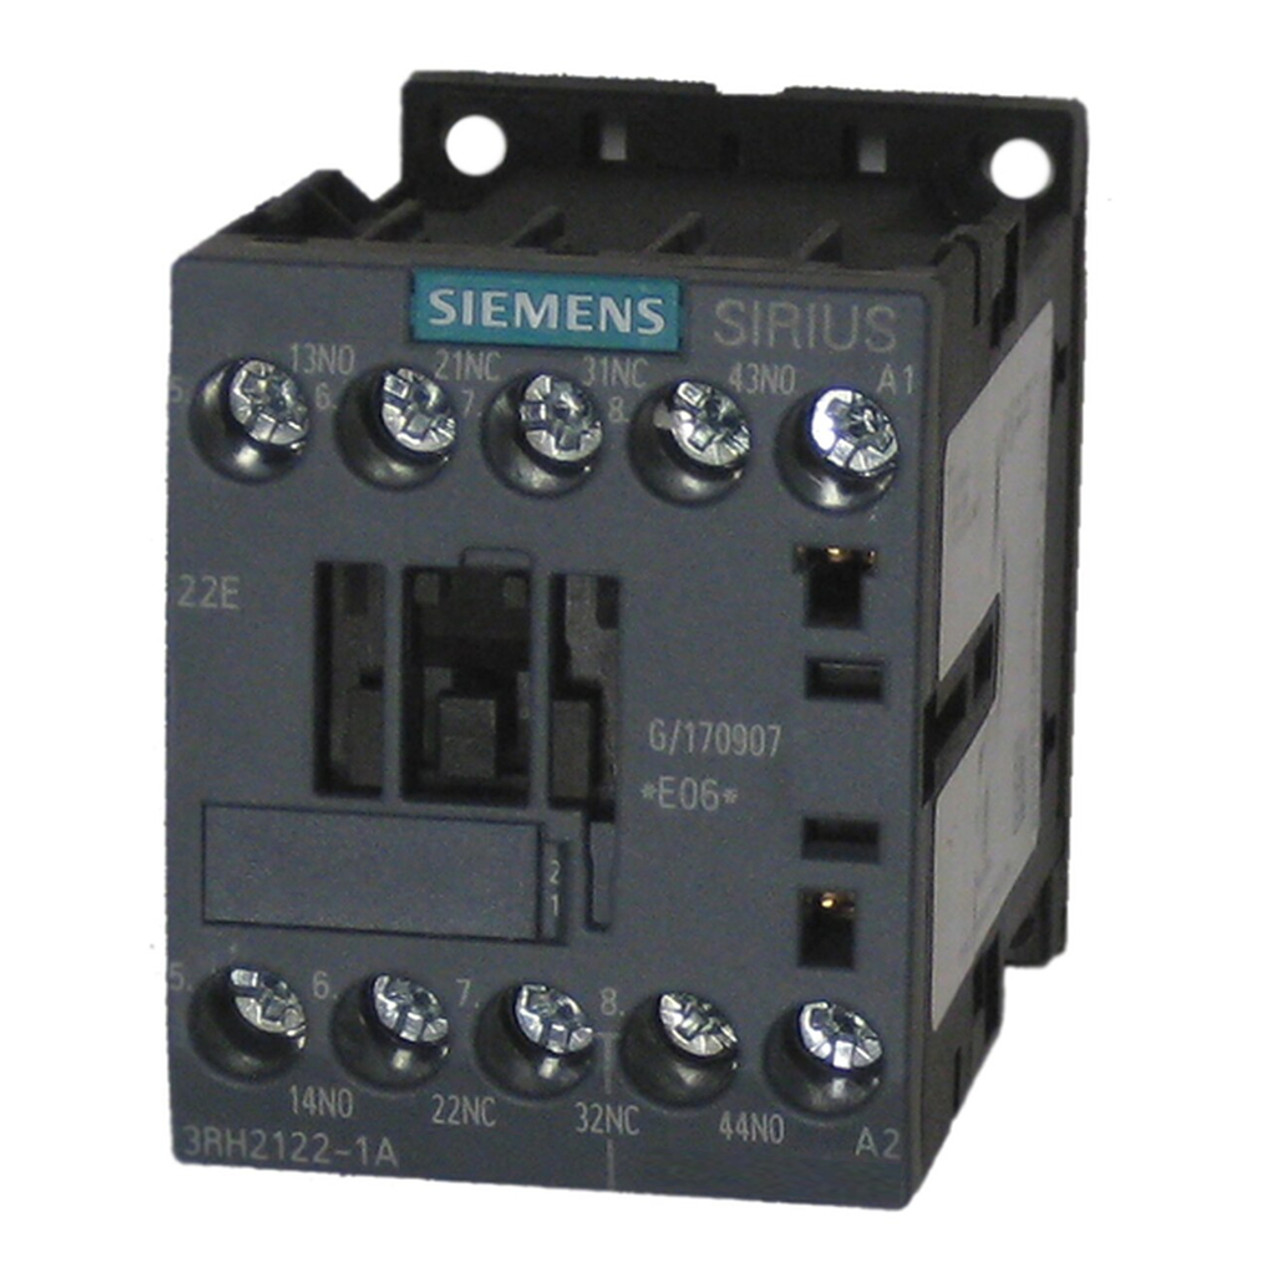 Siemens 3RH2122-1AM20 AC Control Relay